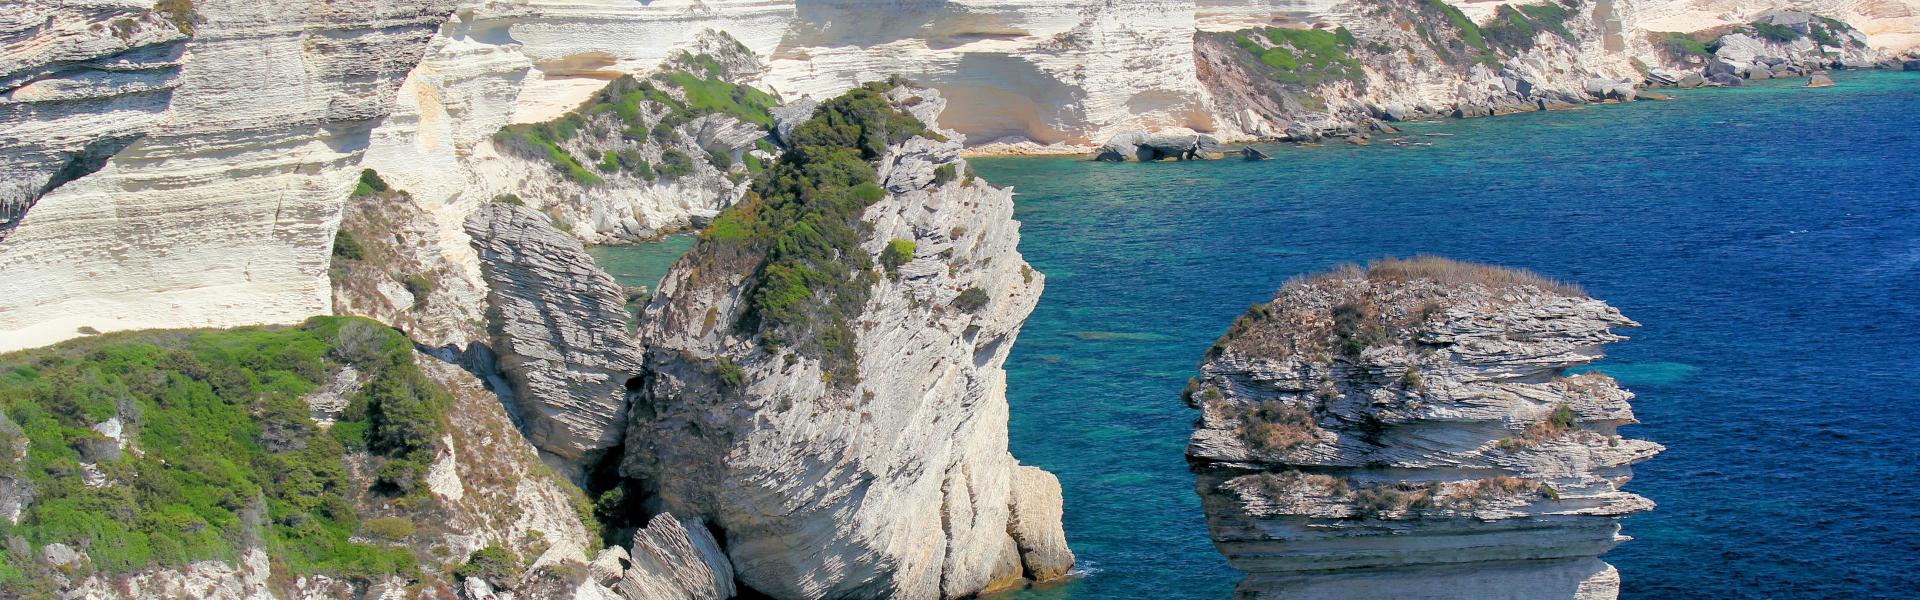 Location de vacances à Barbaggio - Haute-Corse - amivac